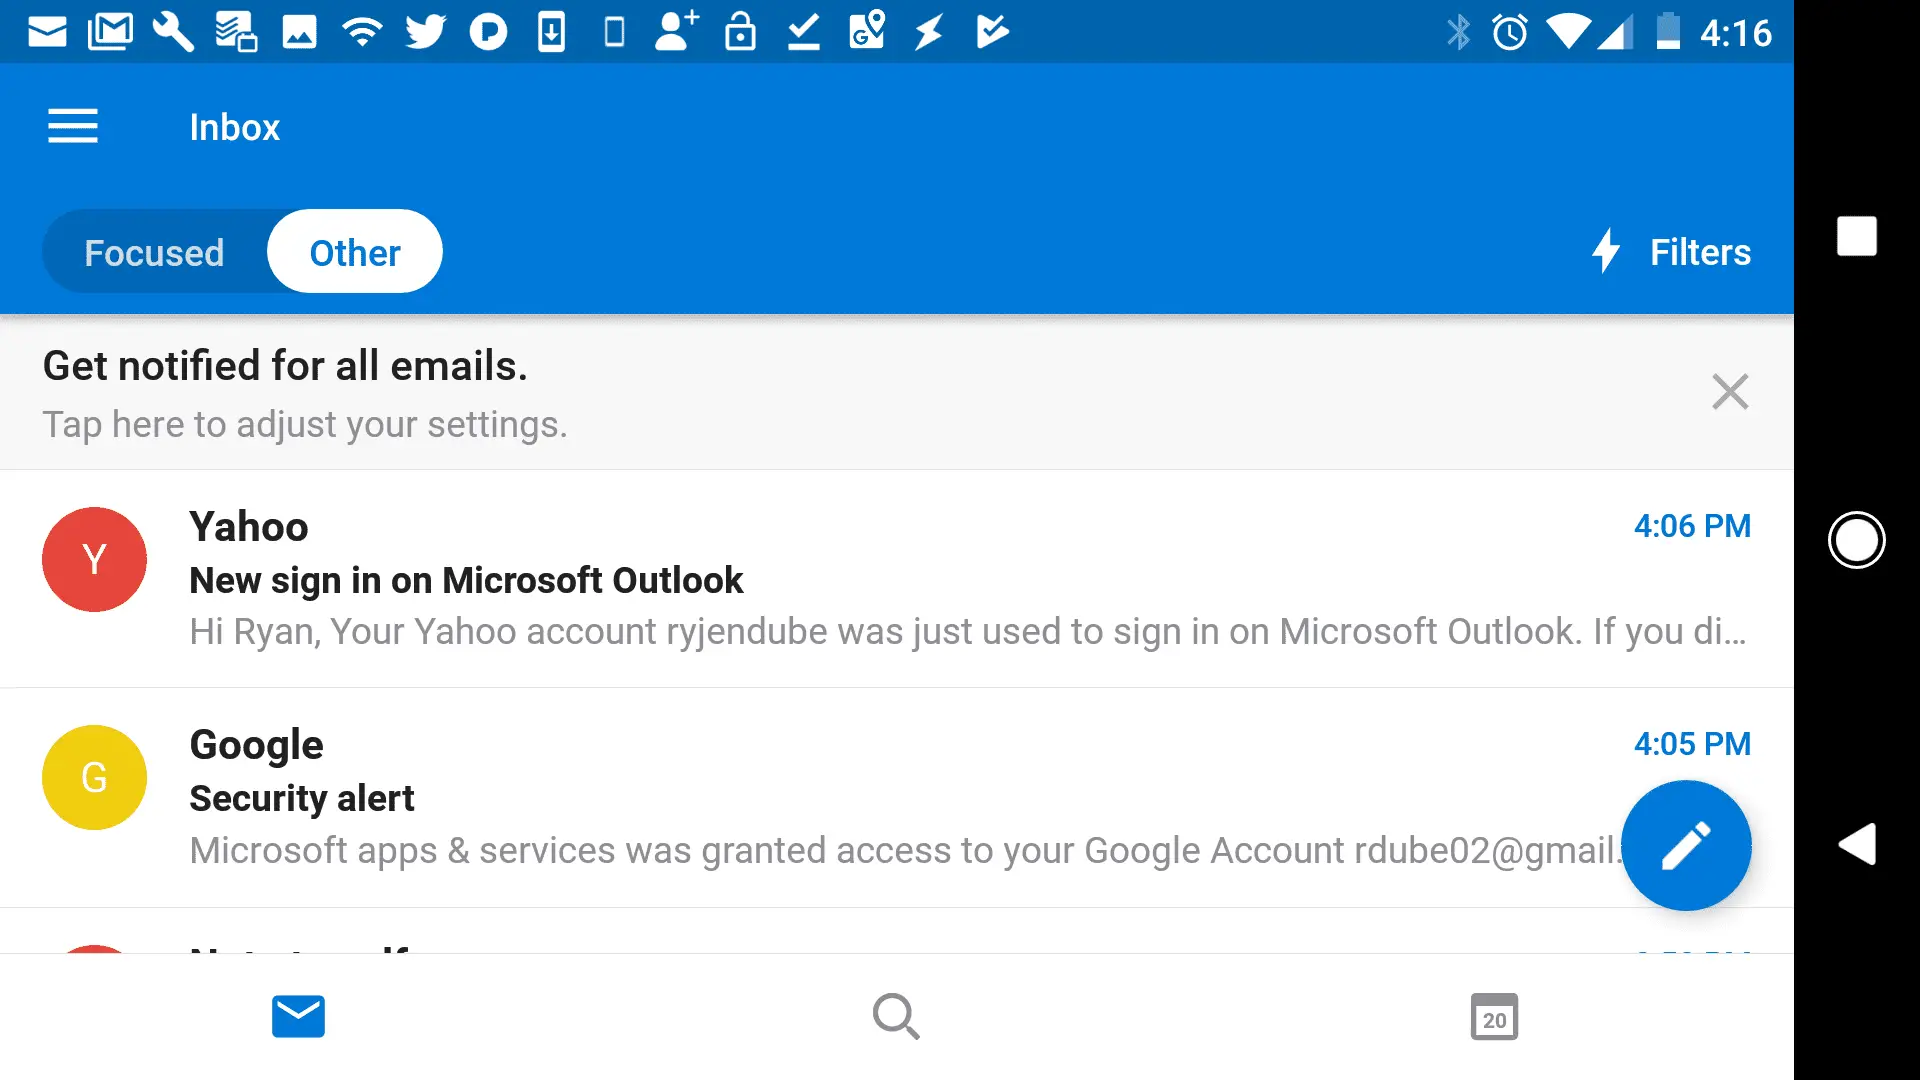 Captura de tela da visualização de e-mails do Gmail no aplicativo móvel Outlook